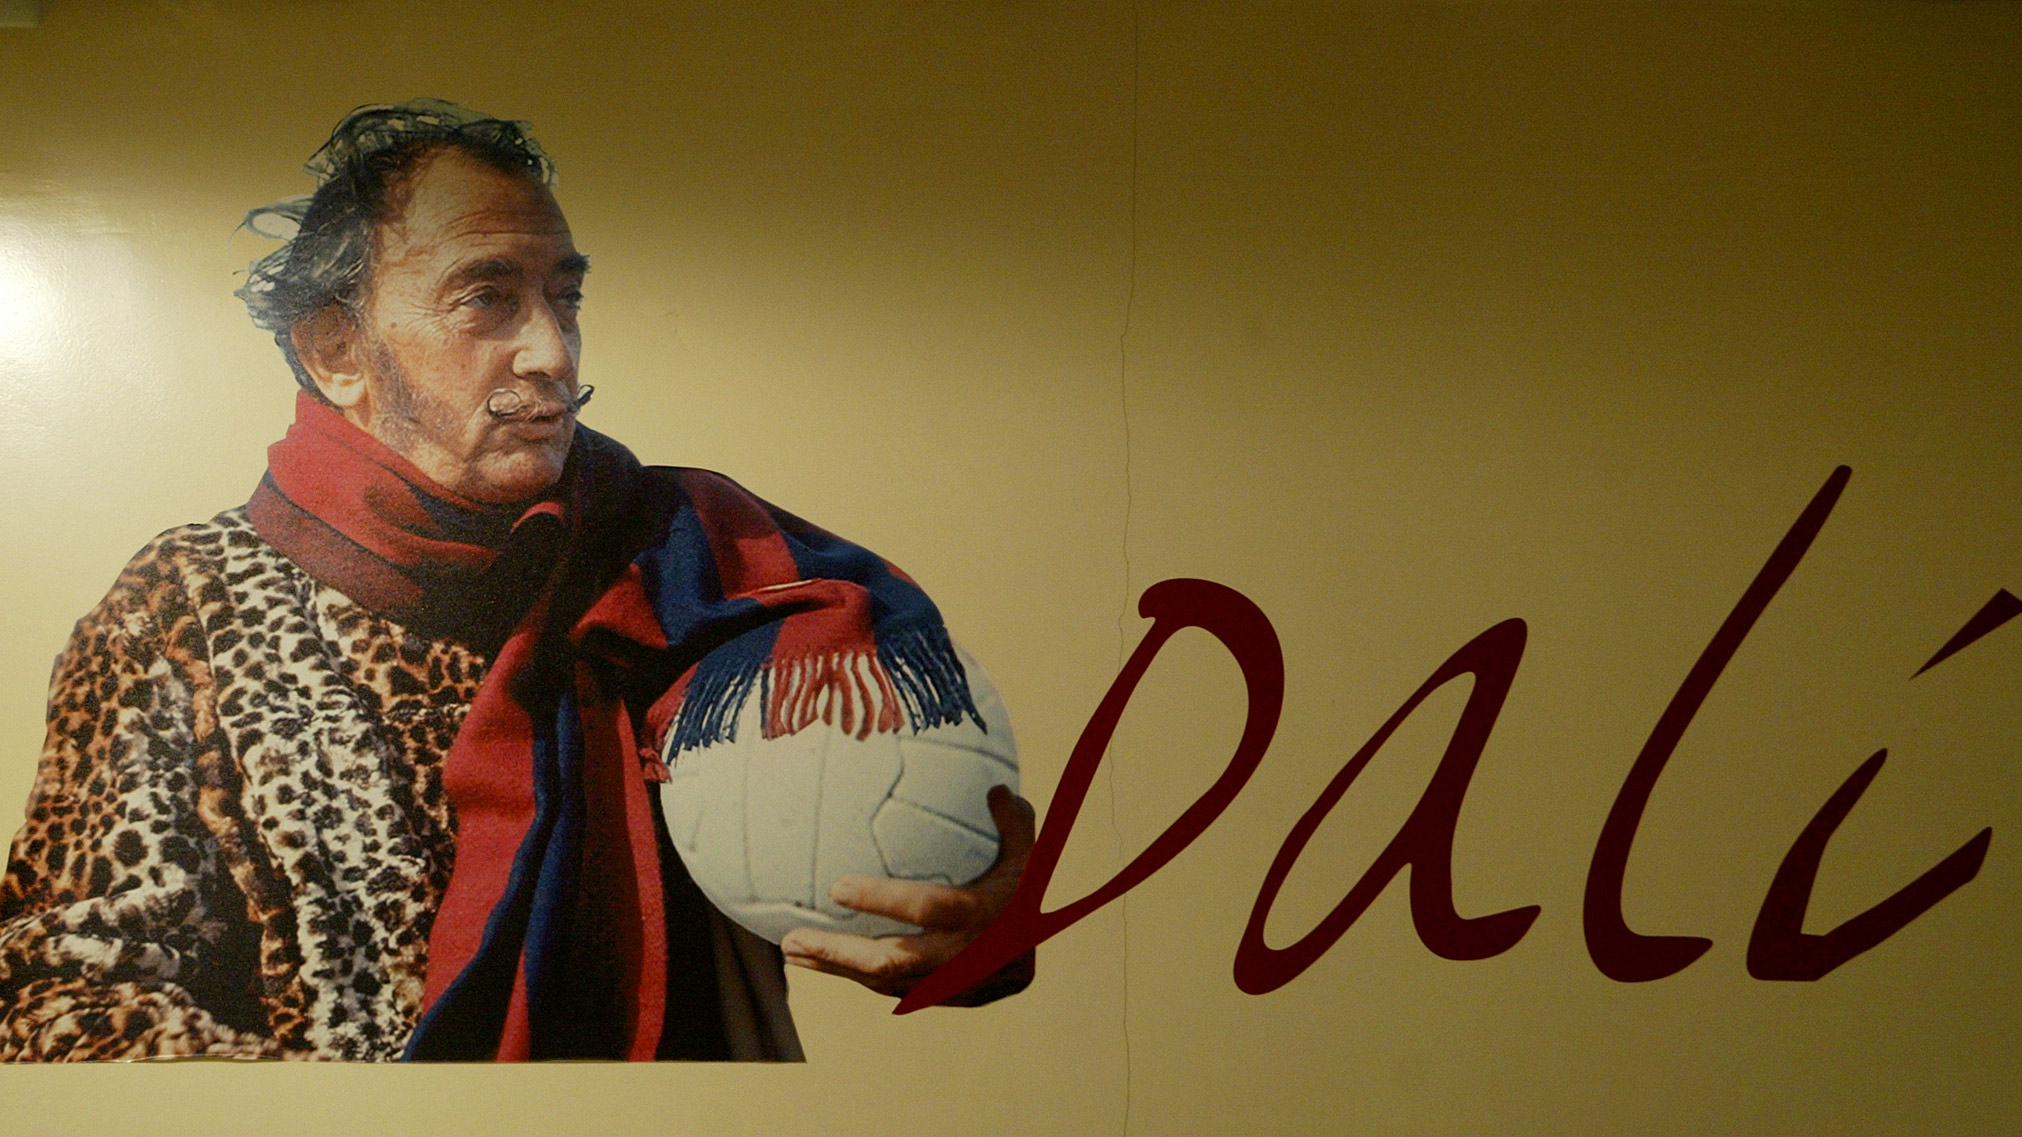 Una juez ordena exhumar los restos de Dalí por una demanda de paternidad